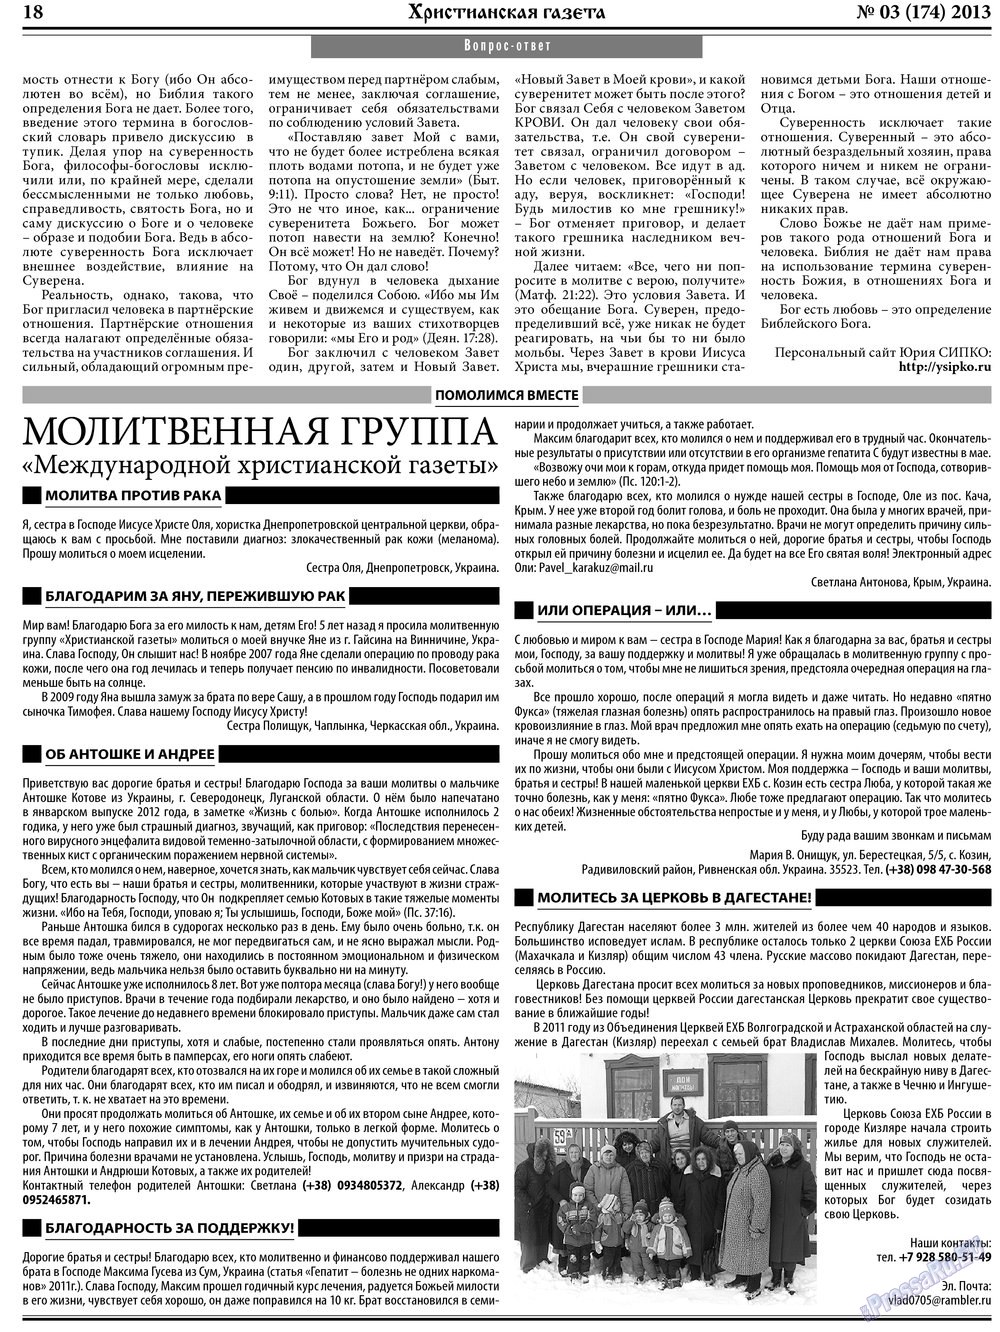 Христианская газета, газета. 2013 №3 стр.26